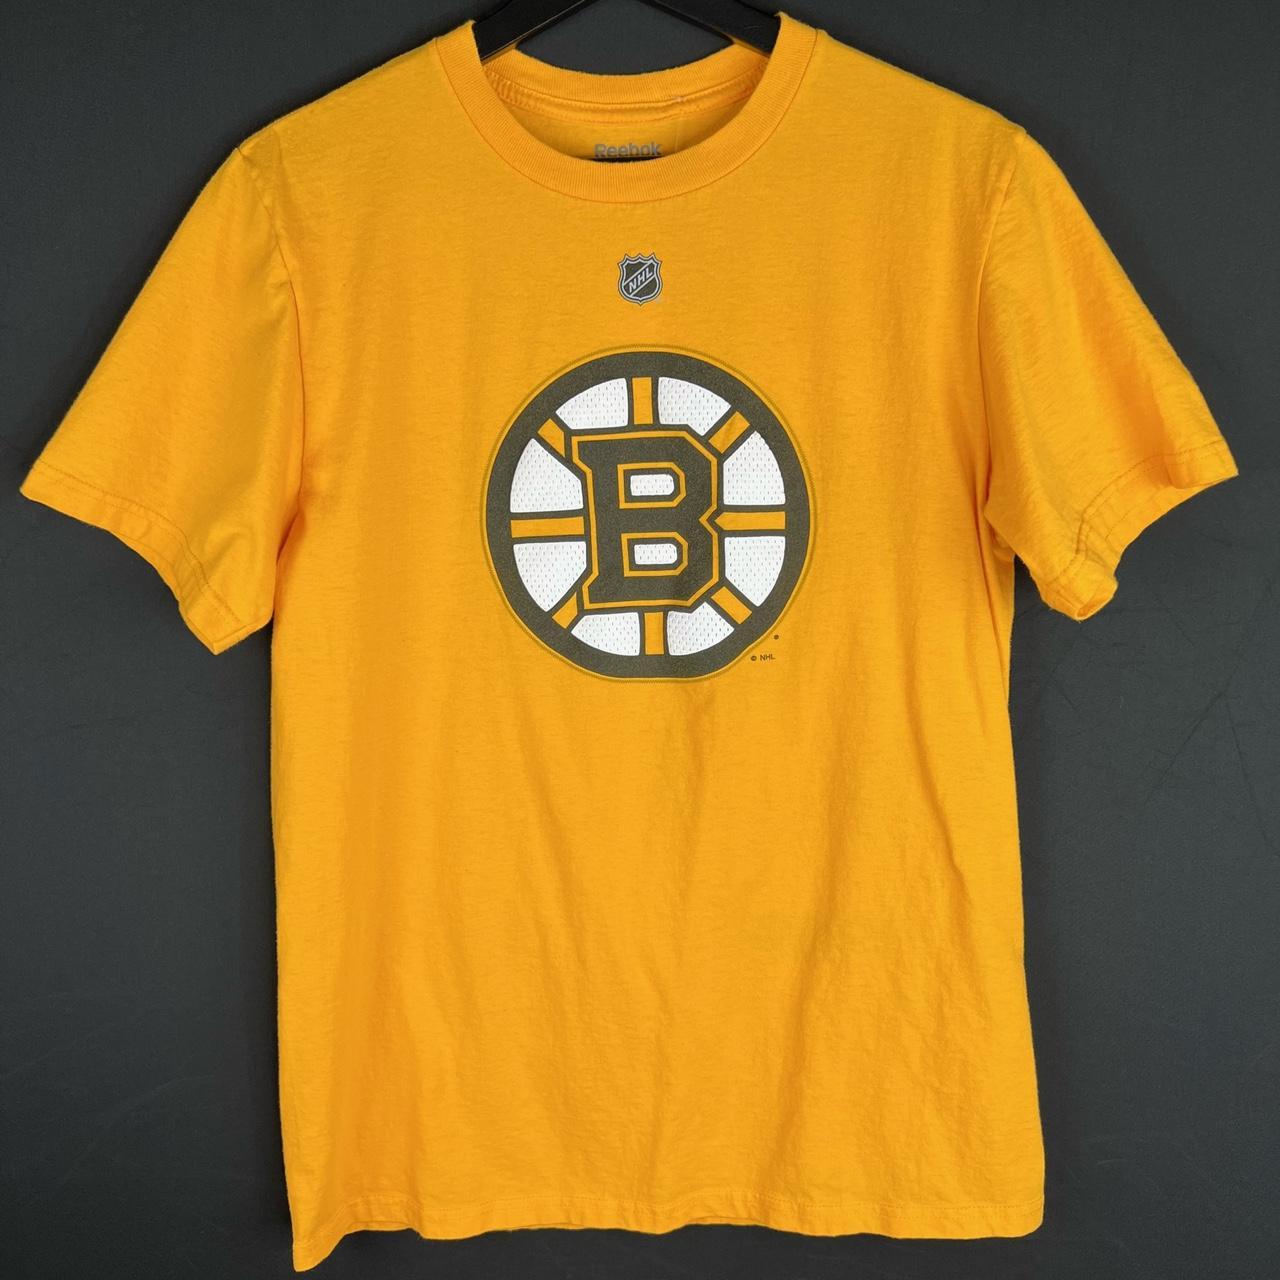 Reebok, Shirts, Boston Bruins Mens Tshirt Reebok Size Medium